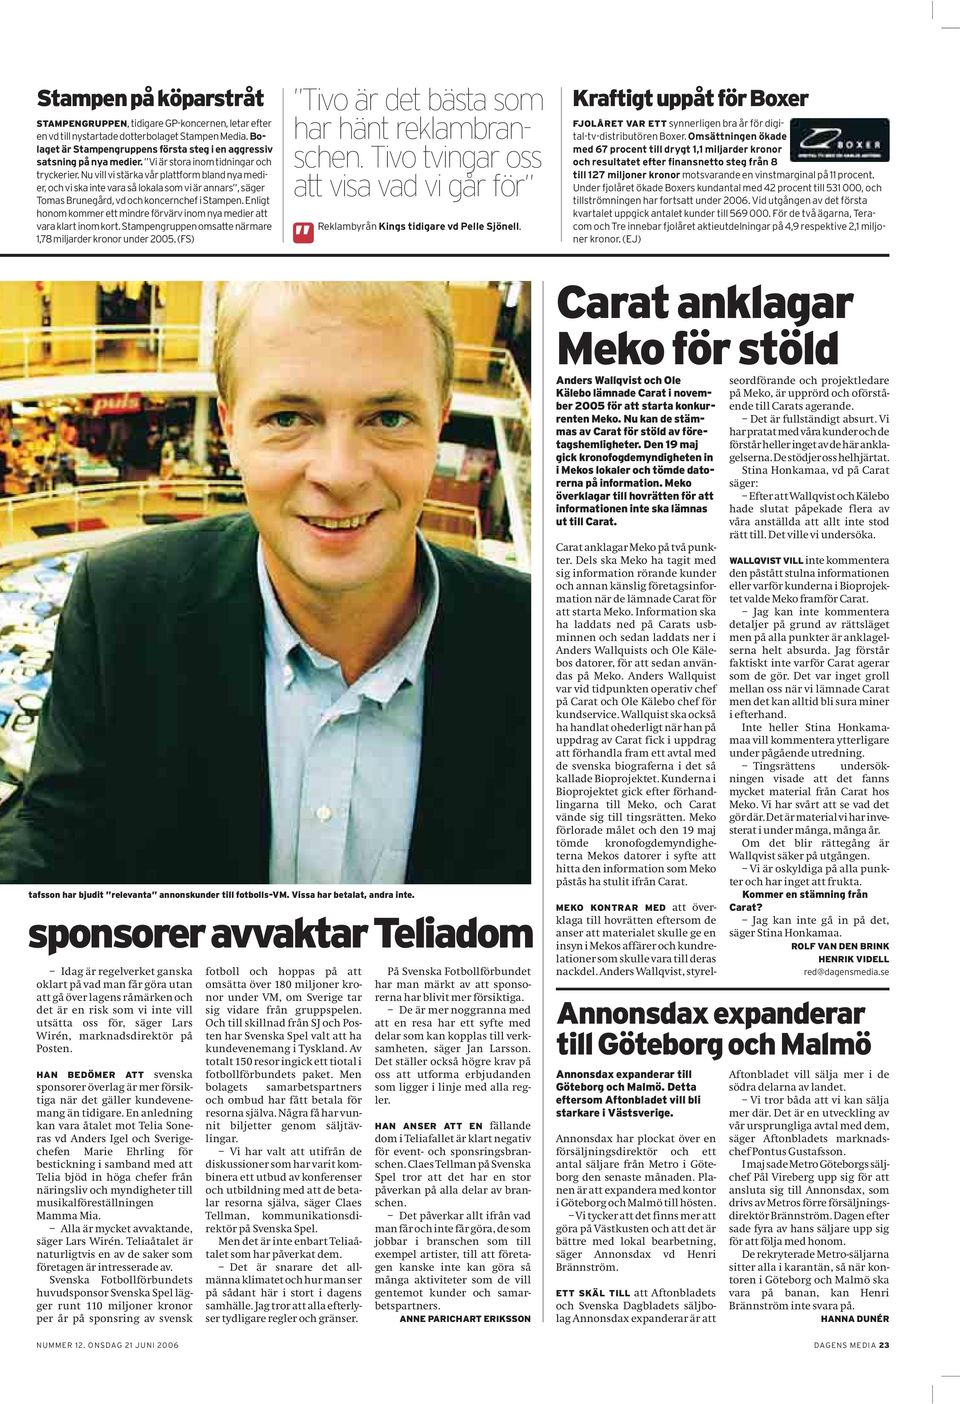 Nu vill vi stärka vår plattform bland nya medier, och vi ska inte vara så lokala som vi är annars, säger Tomas Brunegård, vd och koncernchef i Stampen.